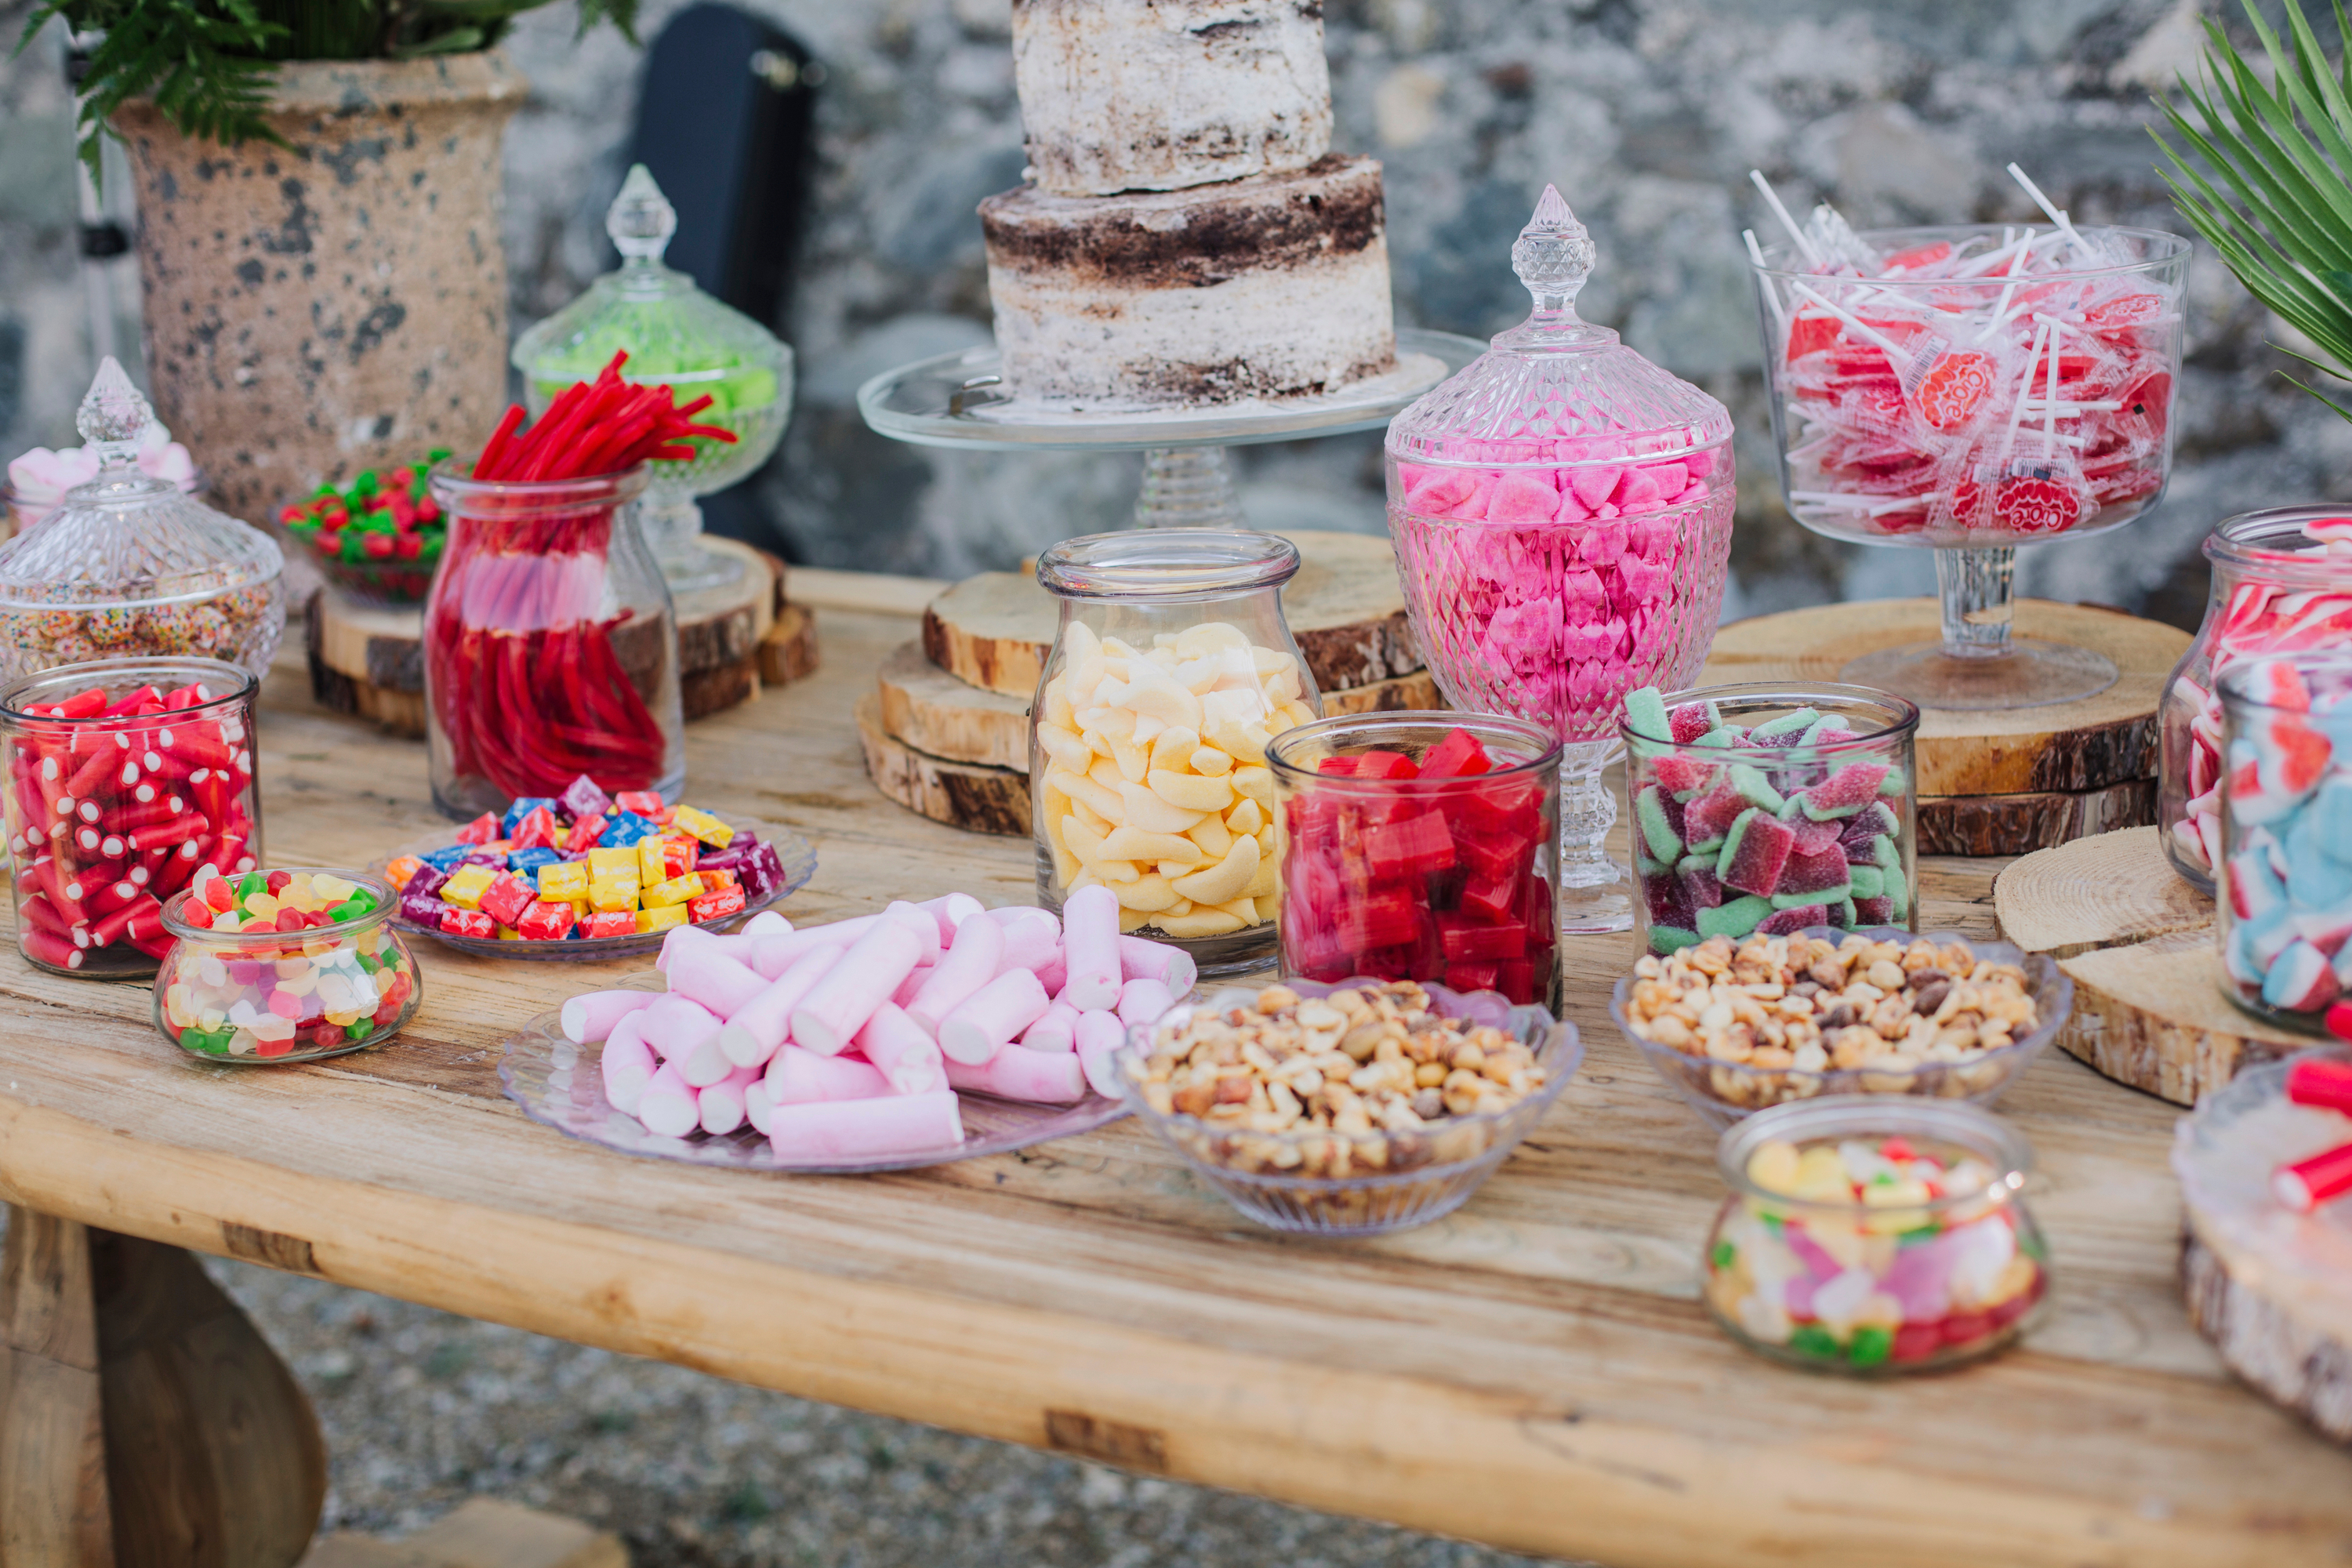 dessert bar | dessert | reception | reception ideas | weddings | wedding ideas | wedding food | wedding desserts 